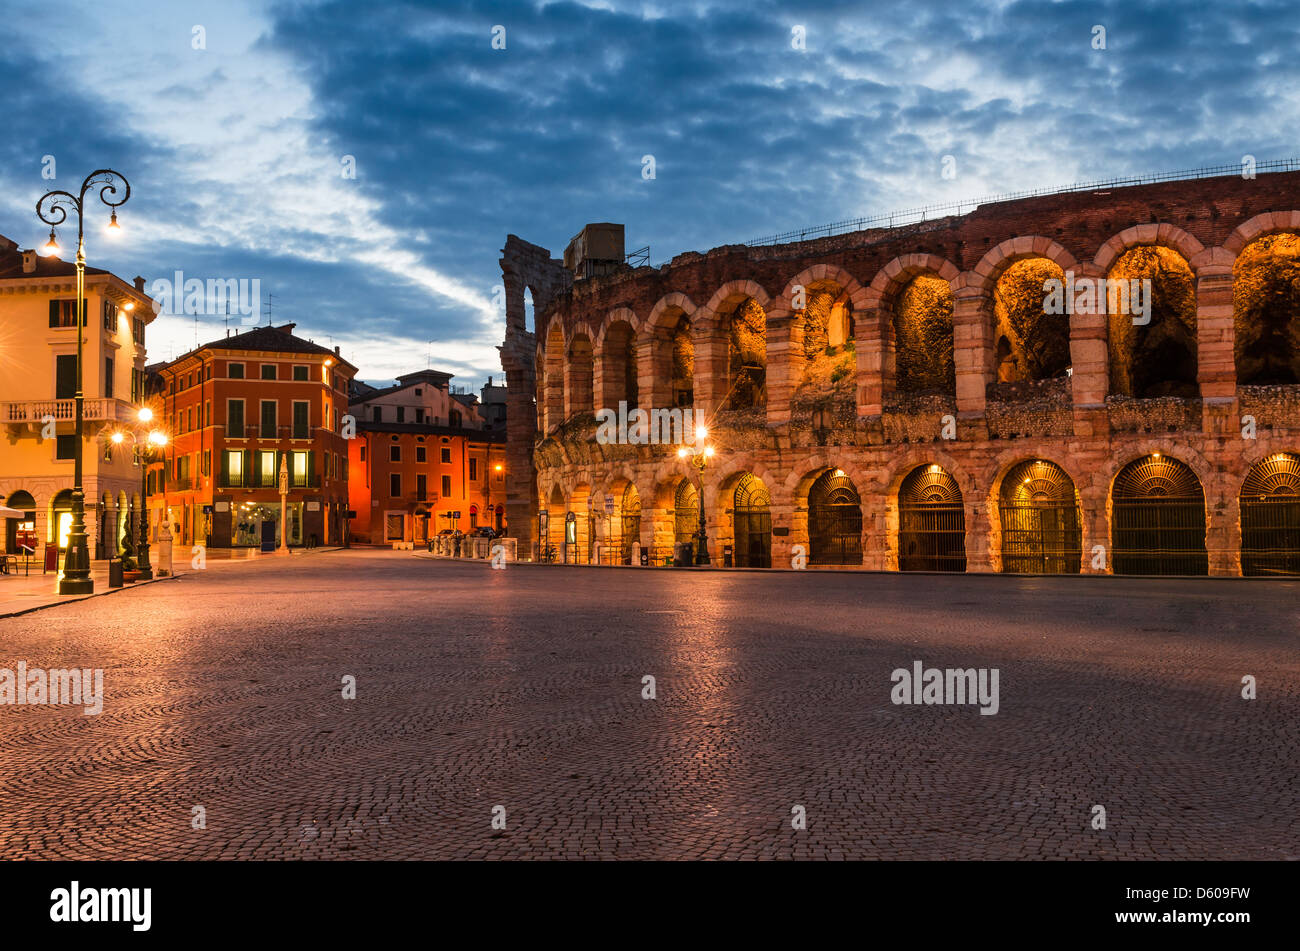 L'anfiteatro, completata nel 30AD, la terza più grande al mondo, al tramonto del tempo. Da Piazza Bra e l'Arena romana di Verona, Italia Foto Stock